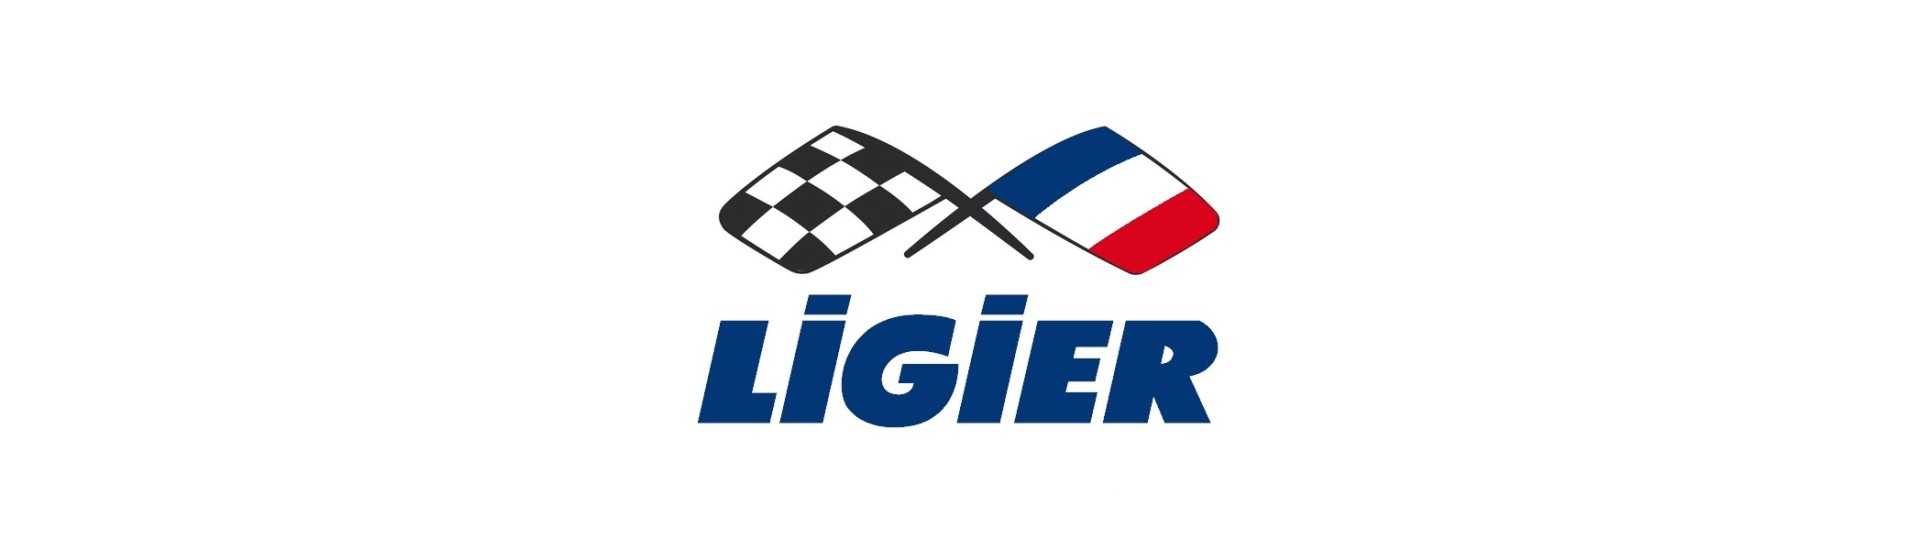 Cubo da porta ao melhor preço para o carro sem uma permissão Ligier